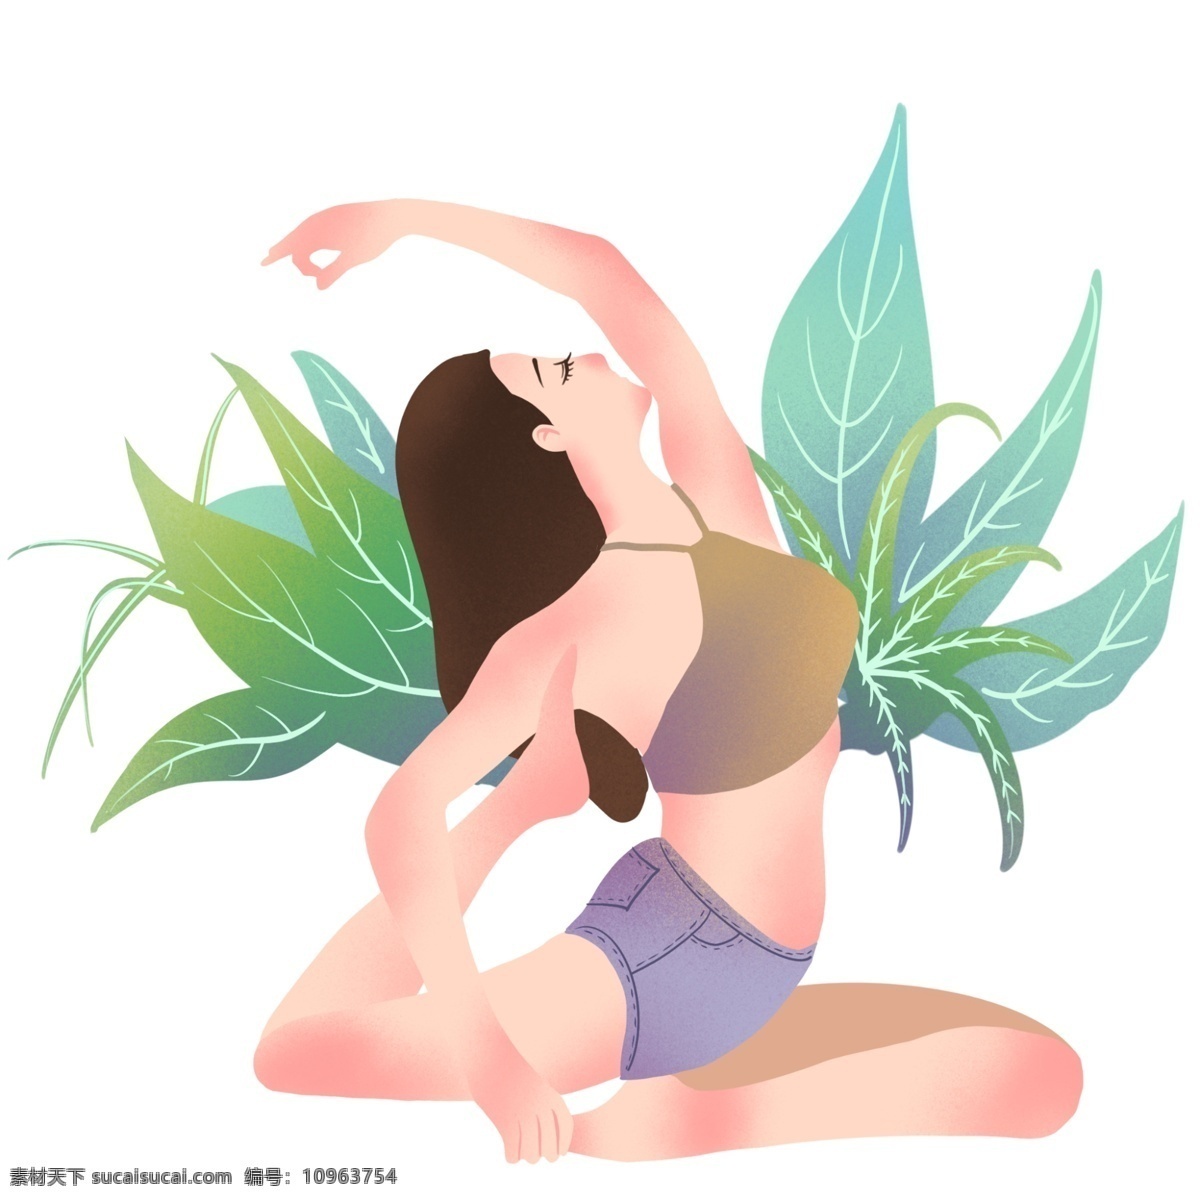 绿叶 装饰 健身 女孩 插画 绿色的叶子 植物装饰 运动的女孩 练瑜伽的女孩 锻炼身体 卡通插画